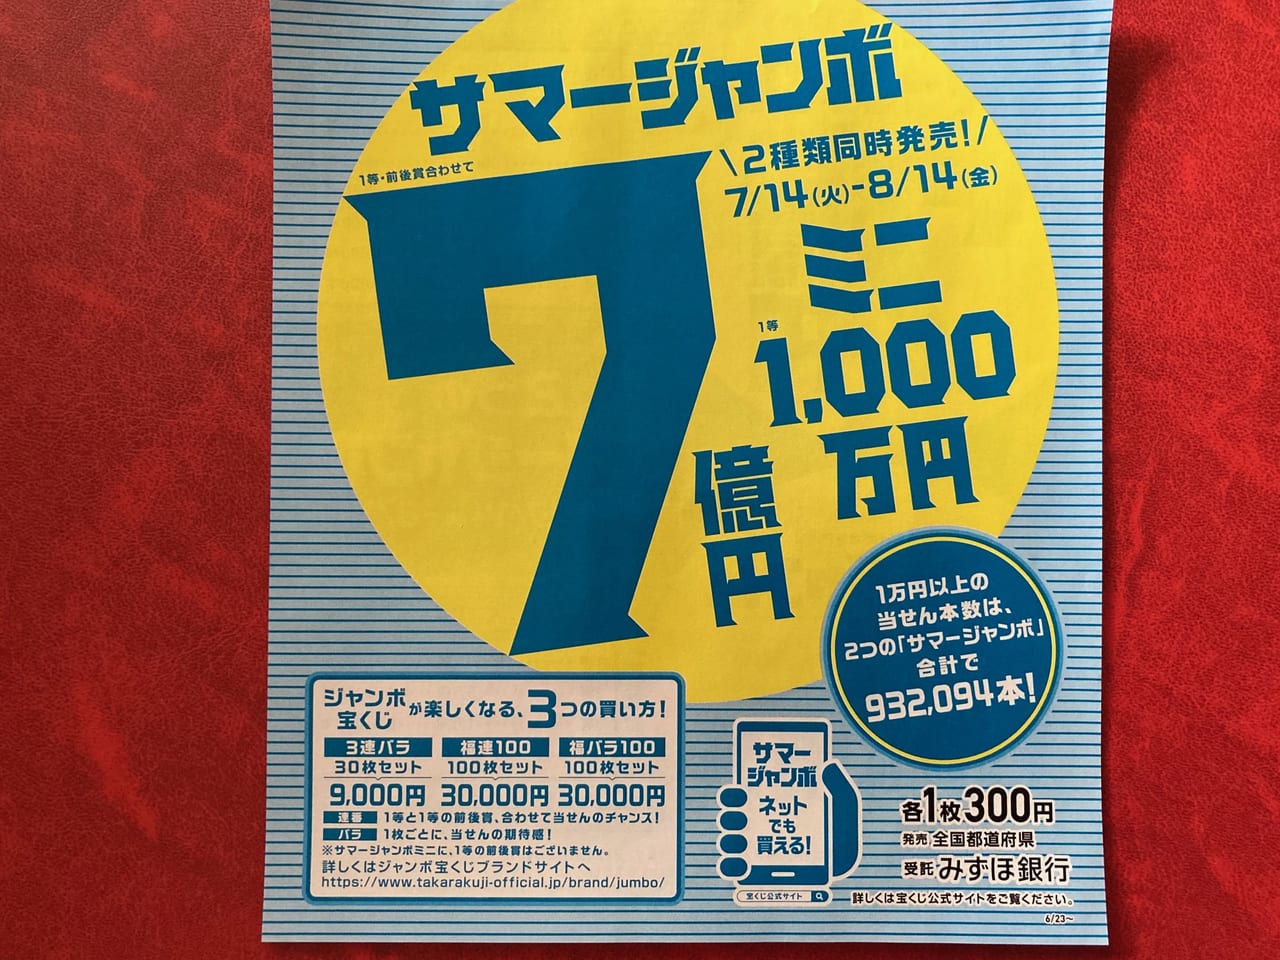 松阪市 サマージャンボ宝くじ7億円 市内の宝くじ売り場で 昨日から発売がはじまりました 号外net 松阪市